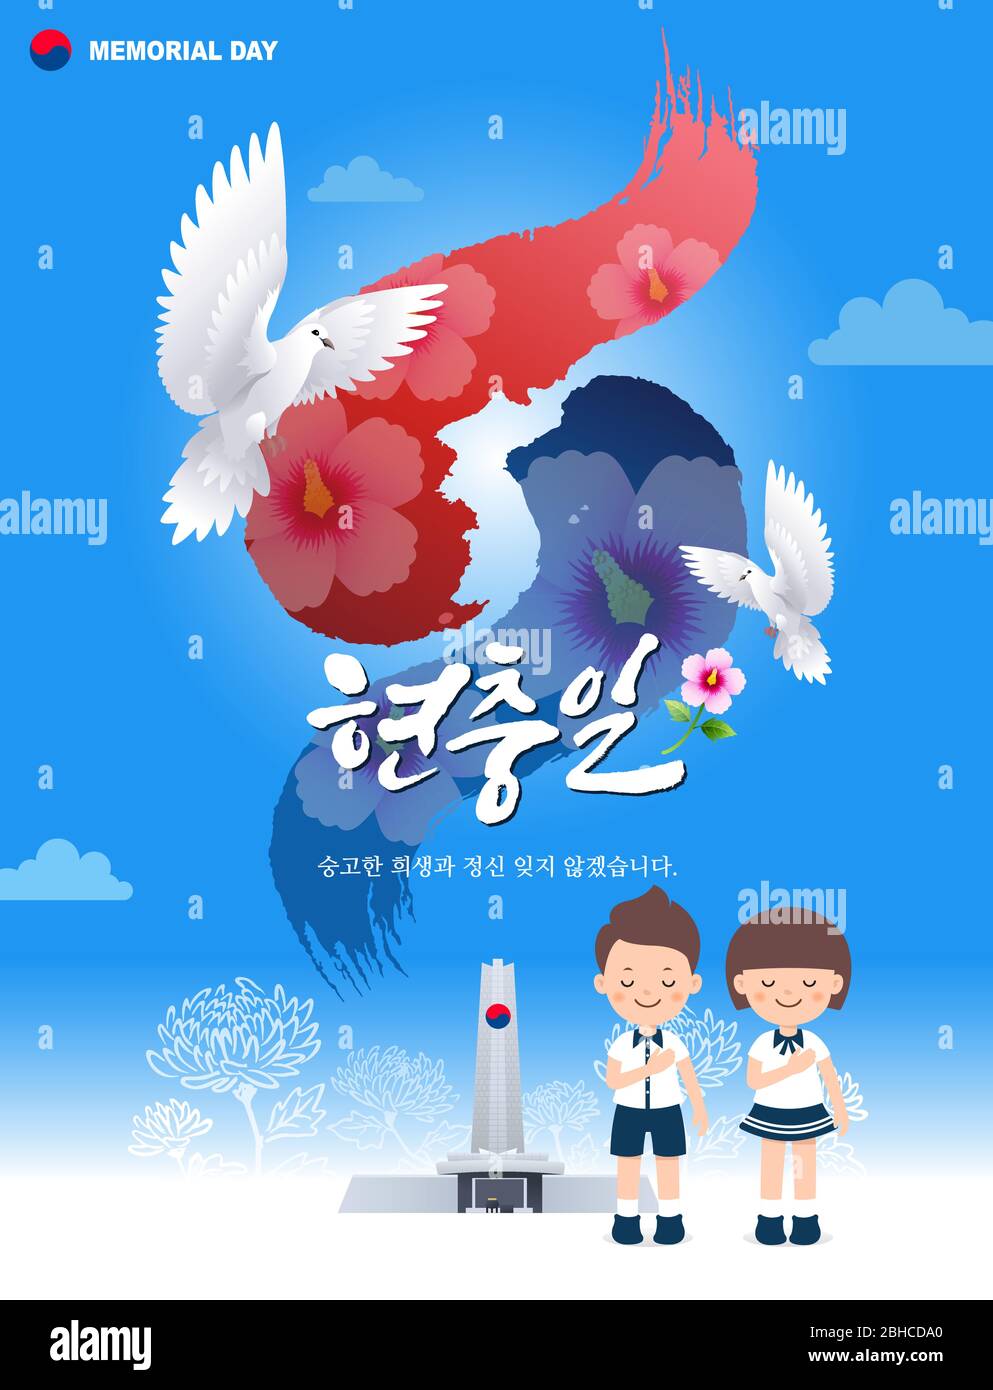 Memorial Day, traduction coréenne. Les enfants rendent hommage devant le monument. Pigeon Taegeukgi, carte coréenne de conception de fond. Illustration de Vecteur